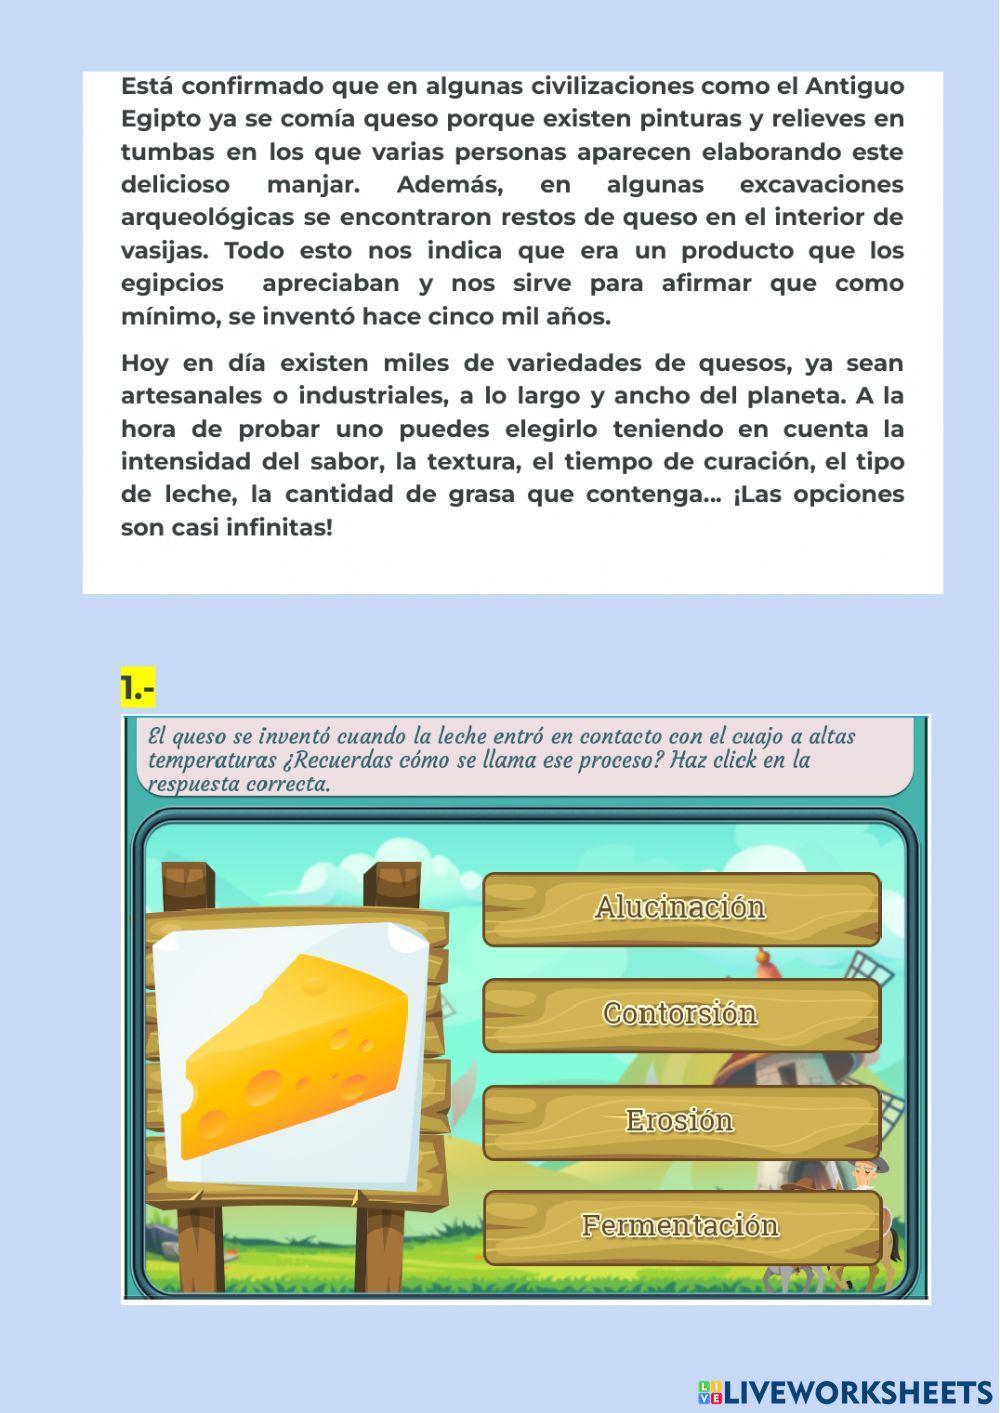 El origen del queso